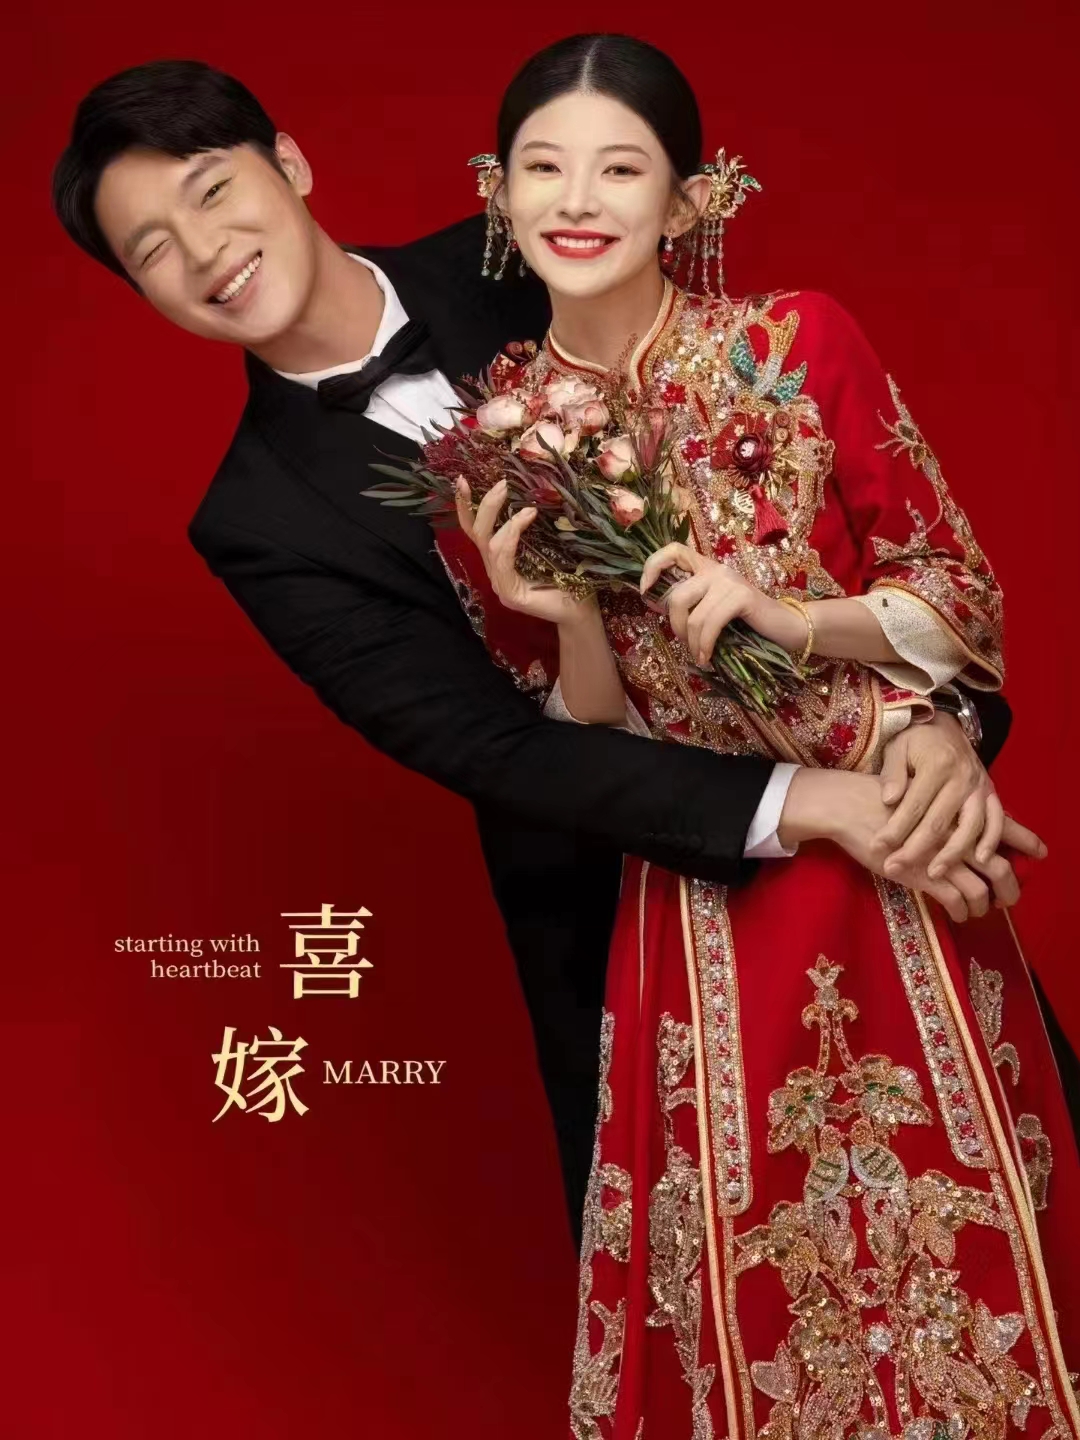 夏季福利 | 父母喜爱的中式喜嫁婚纱照